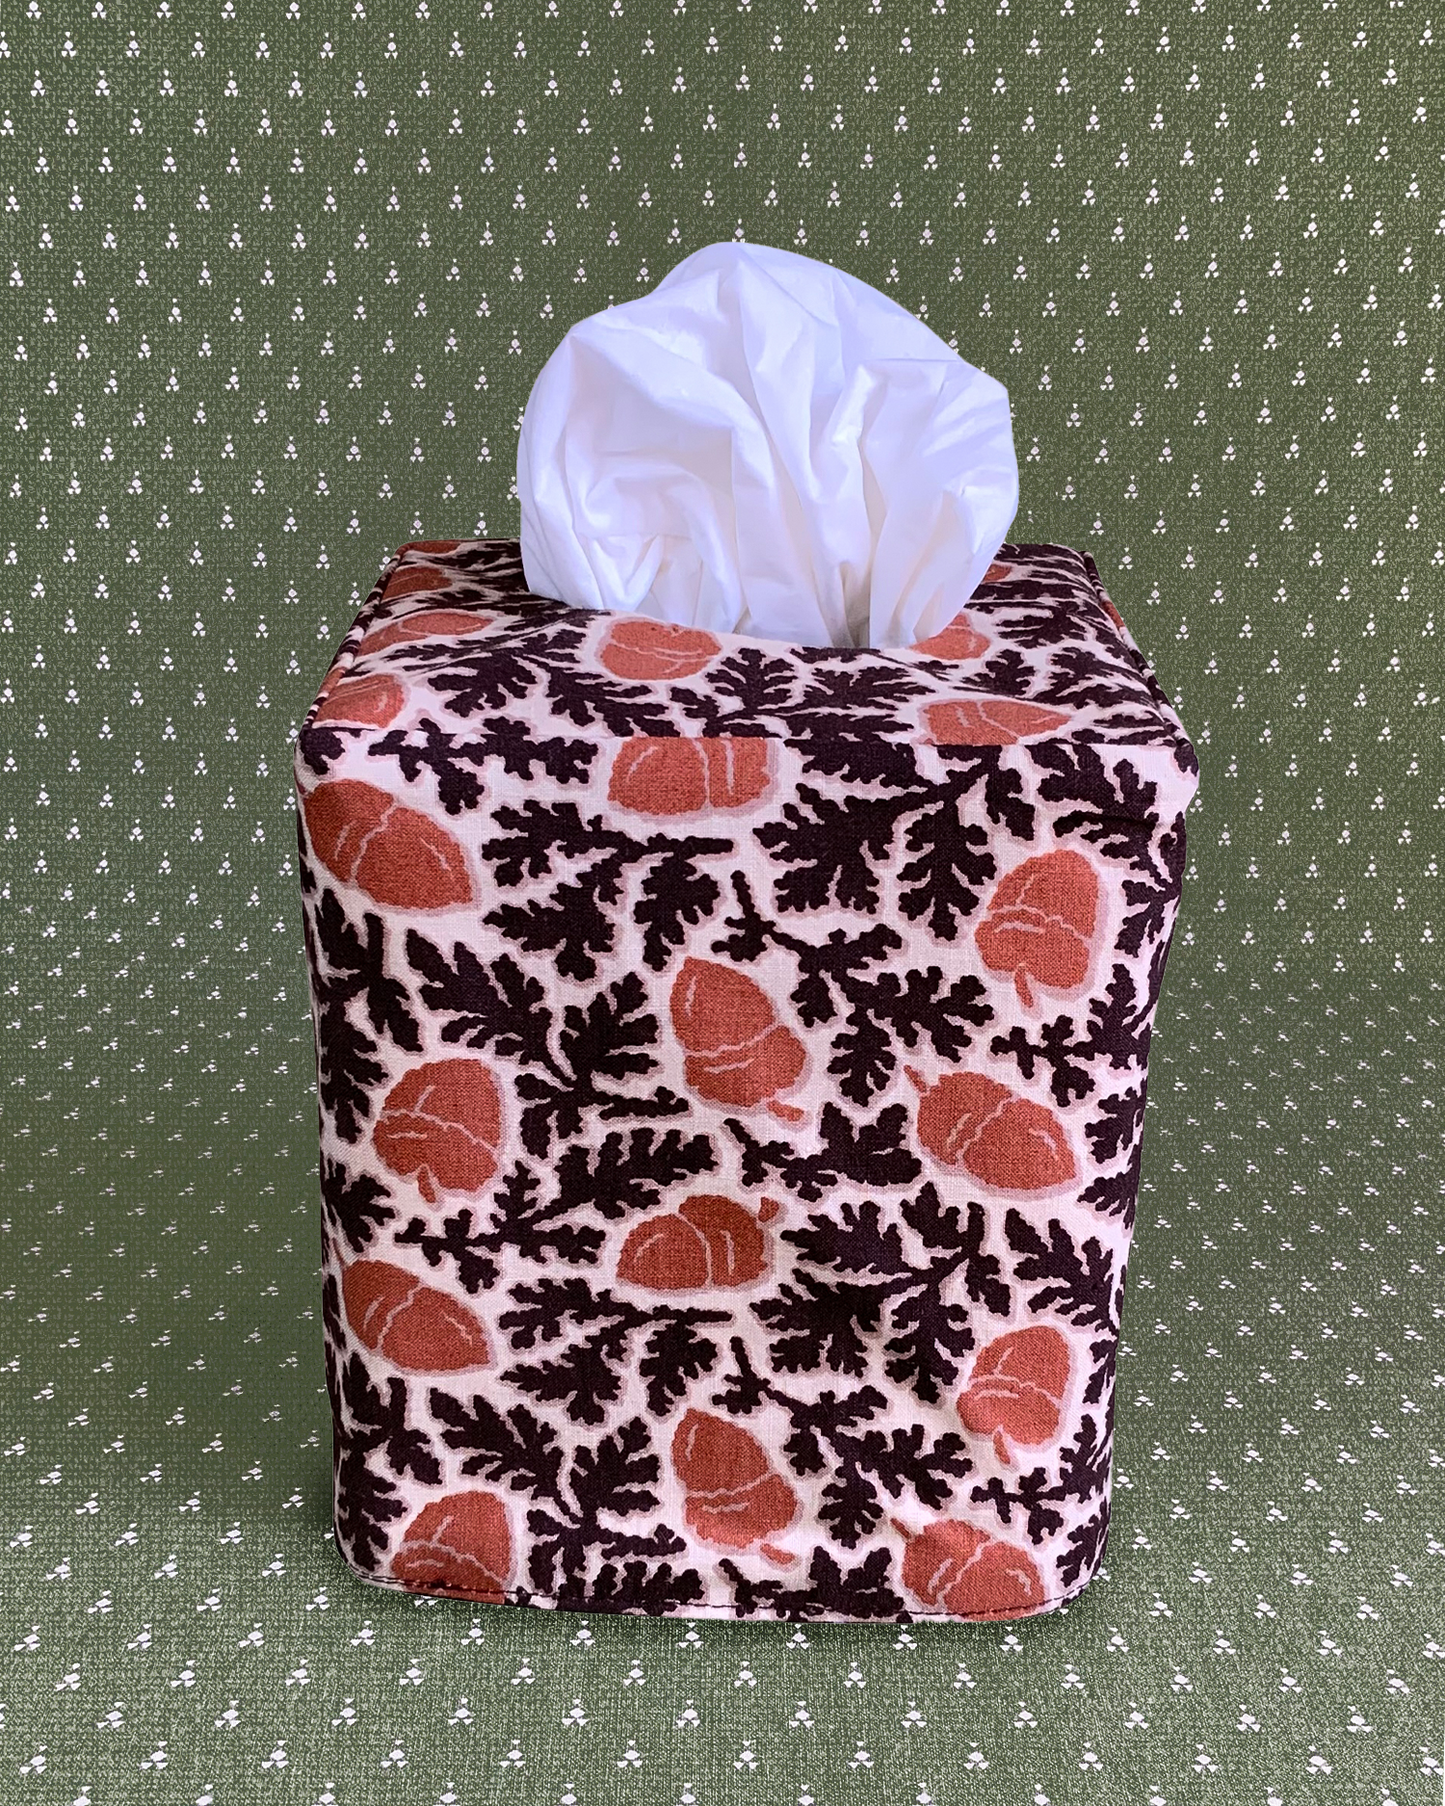 Tissue Box Cover “Acorn” in brown/cinnamon